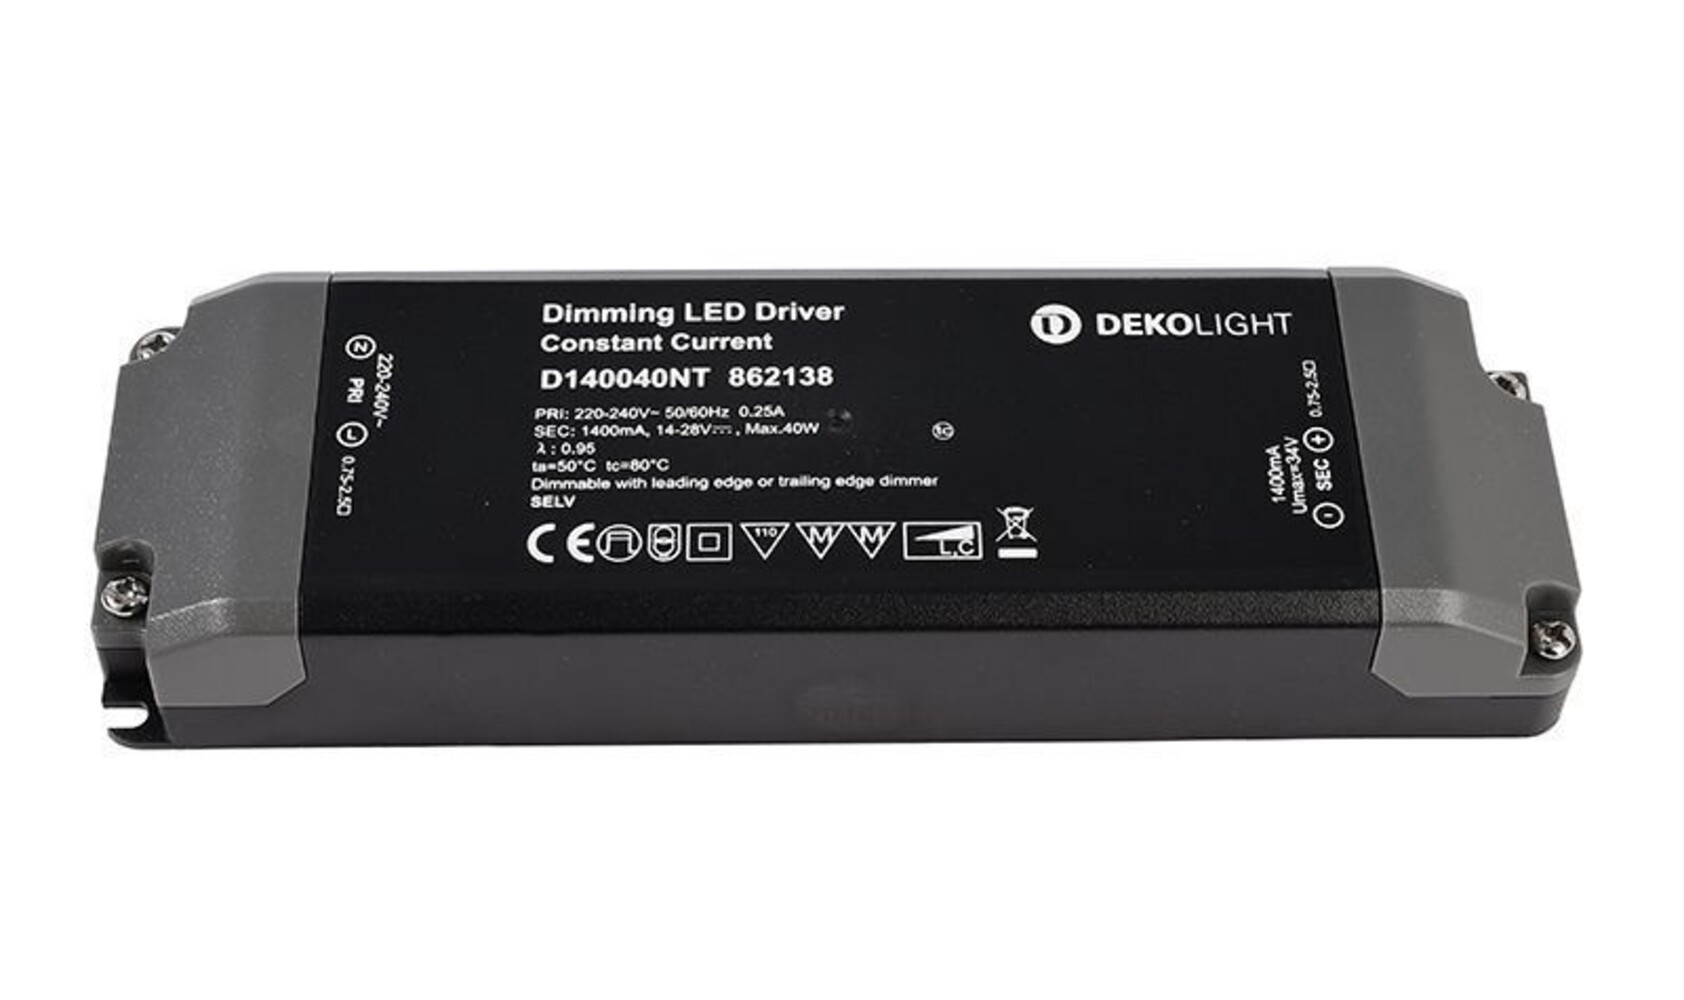 Hochqualitatives, dimmbares LED Netzteil von der Marke Deko-Light